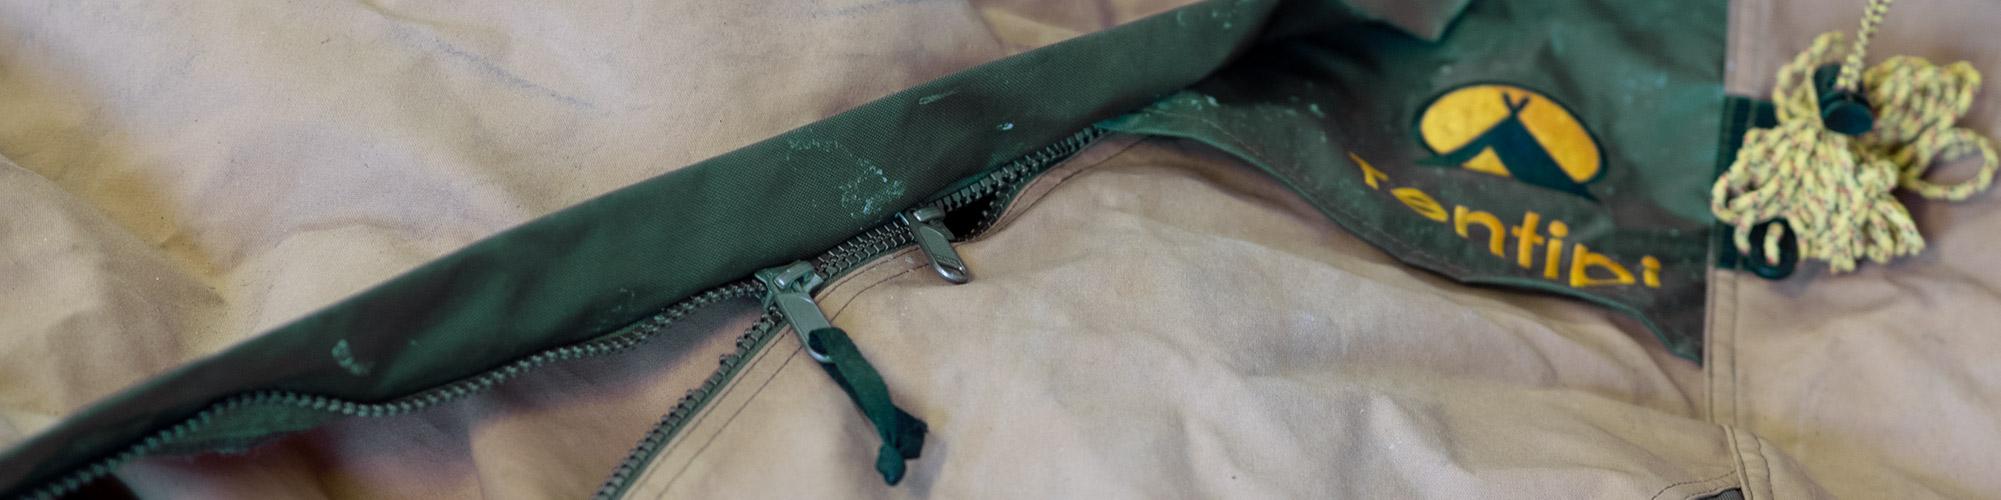 AA How to avoid damages broken zipper bkg2000pix